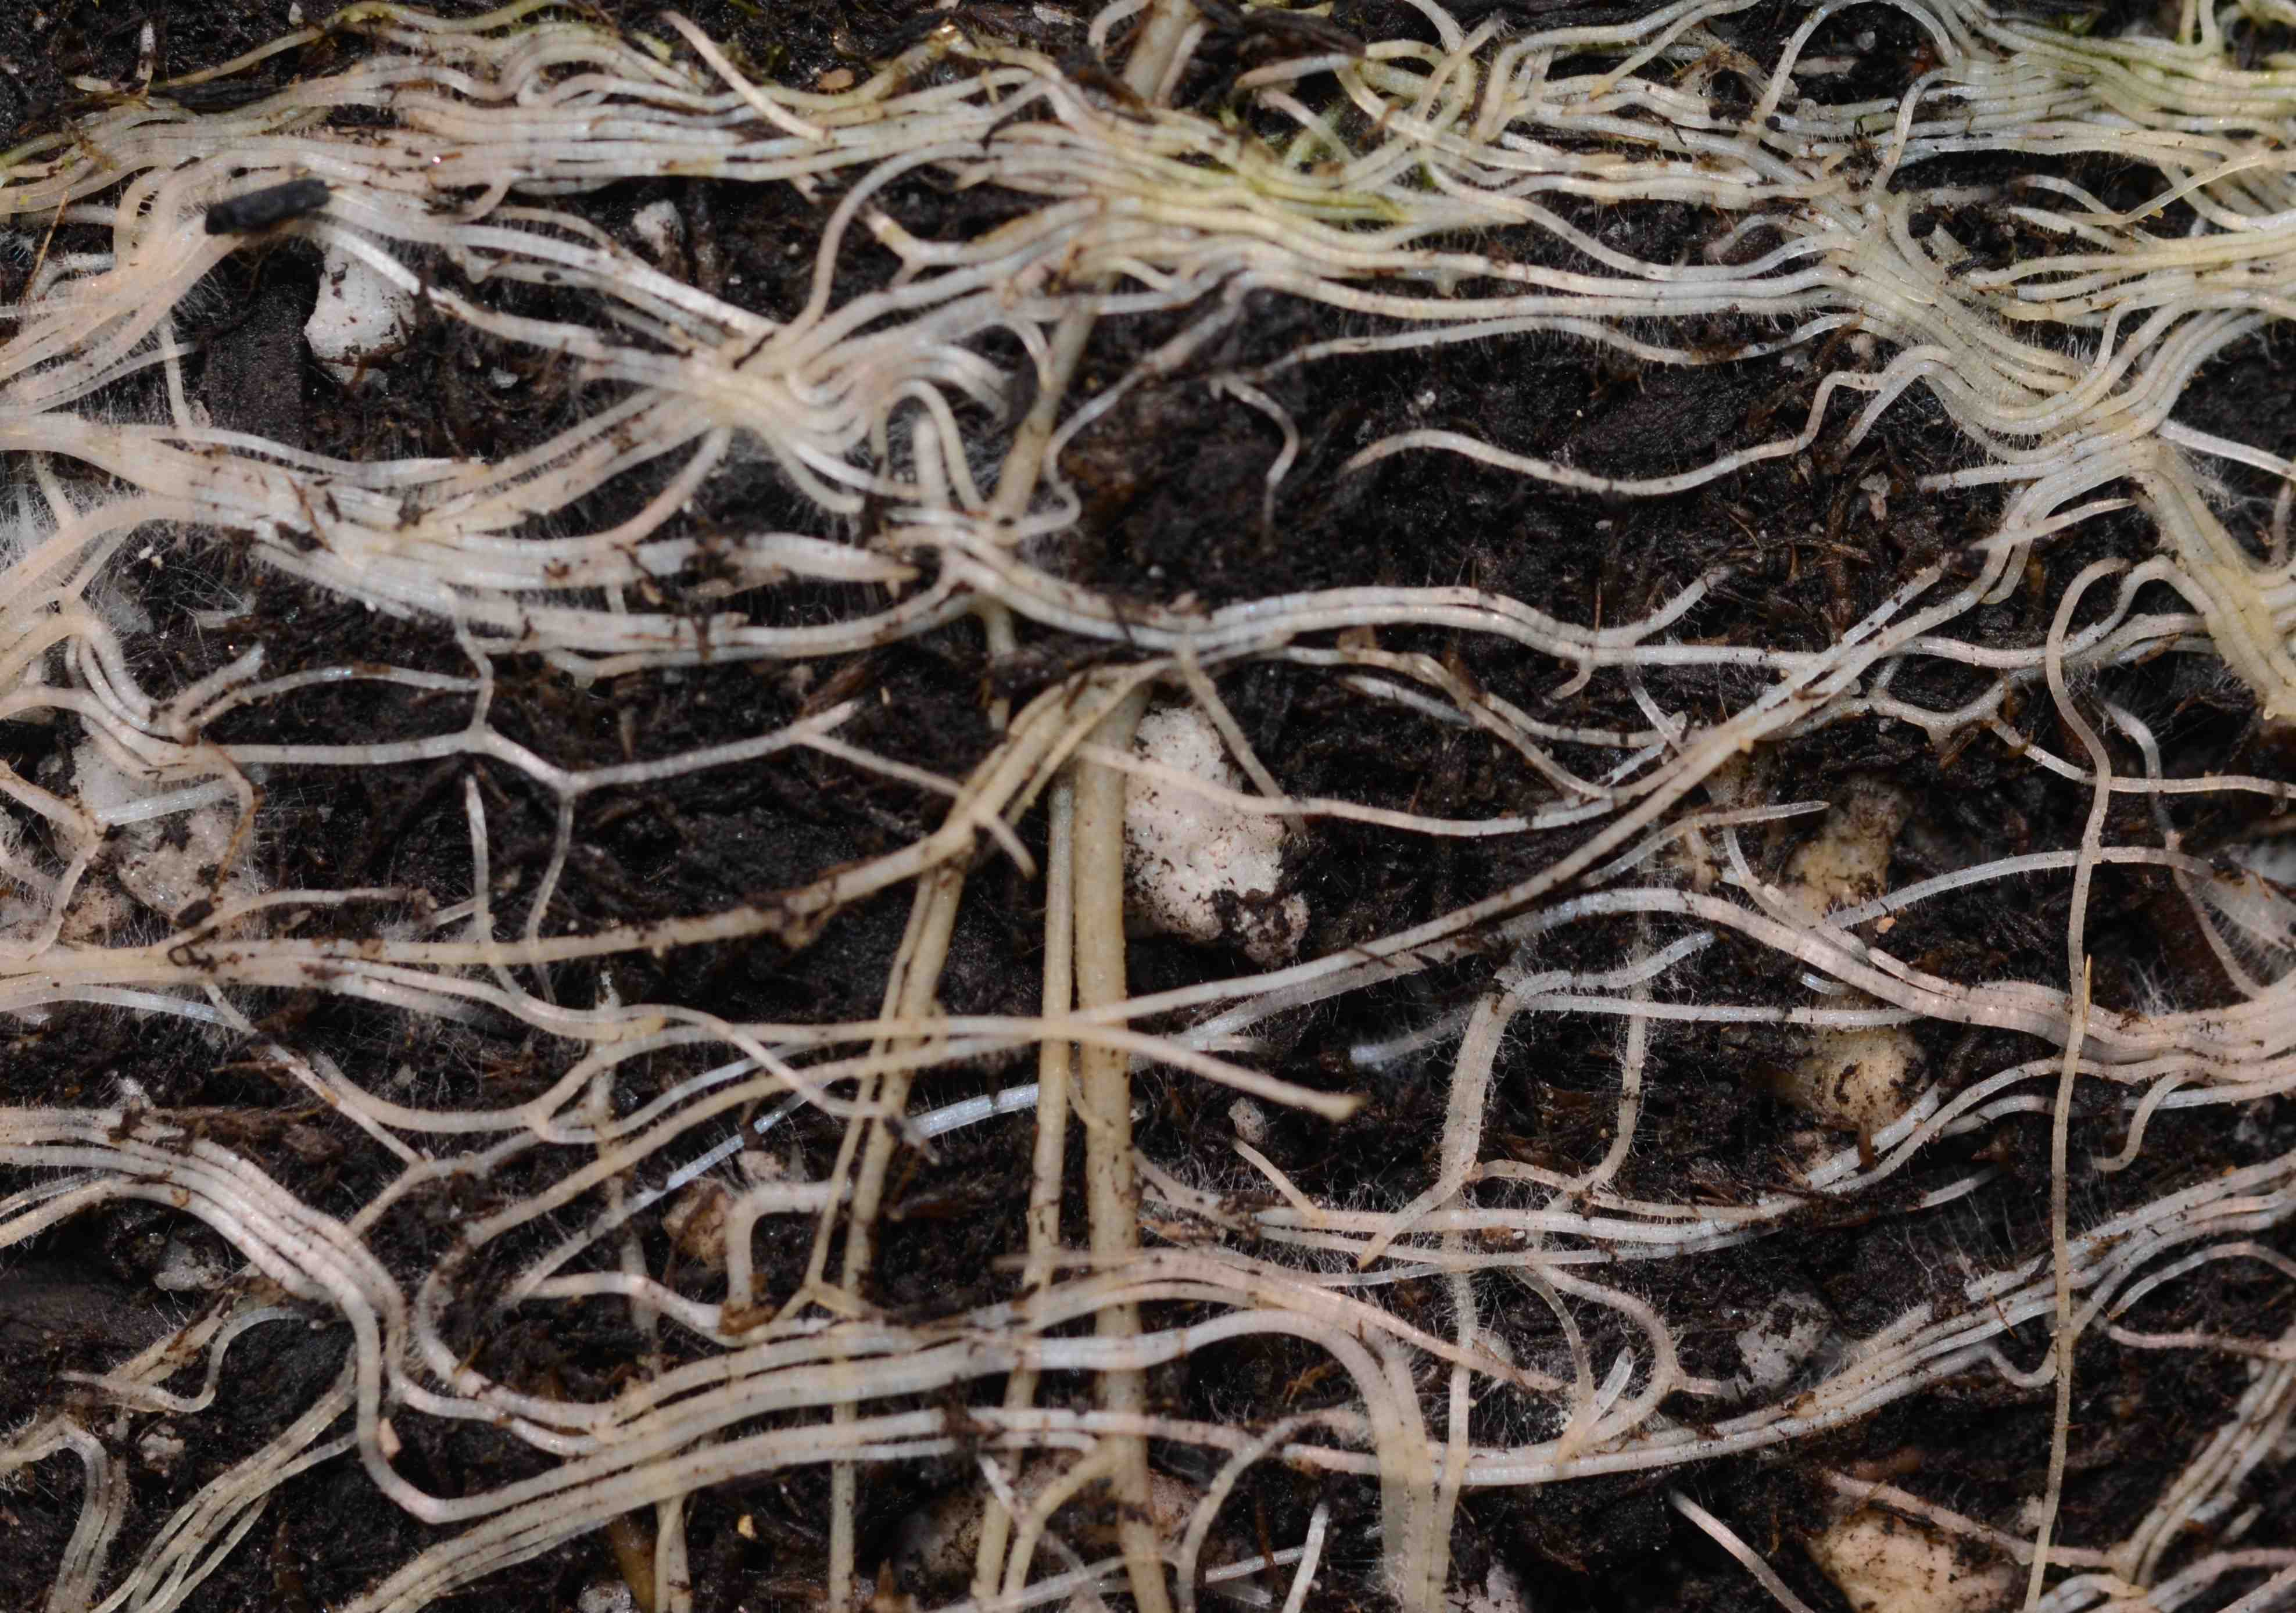 Agoseris grandiflora roots. 